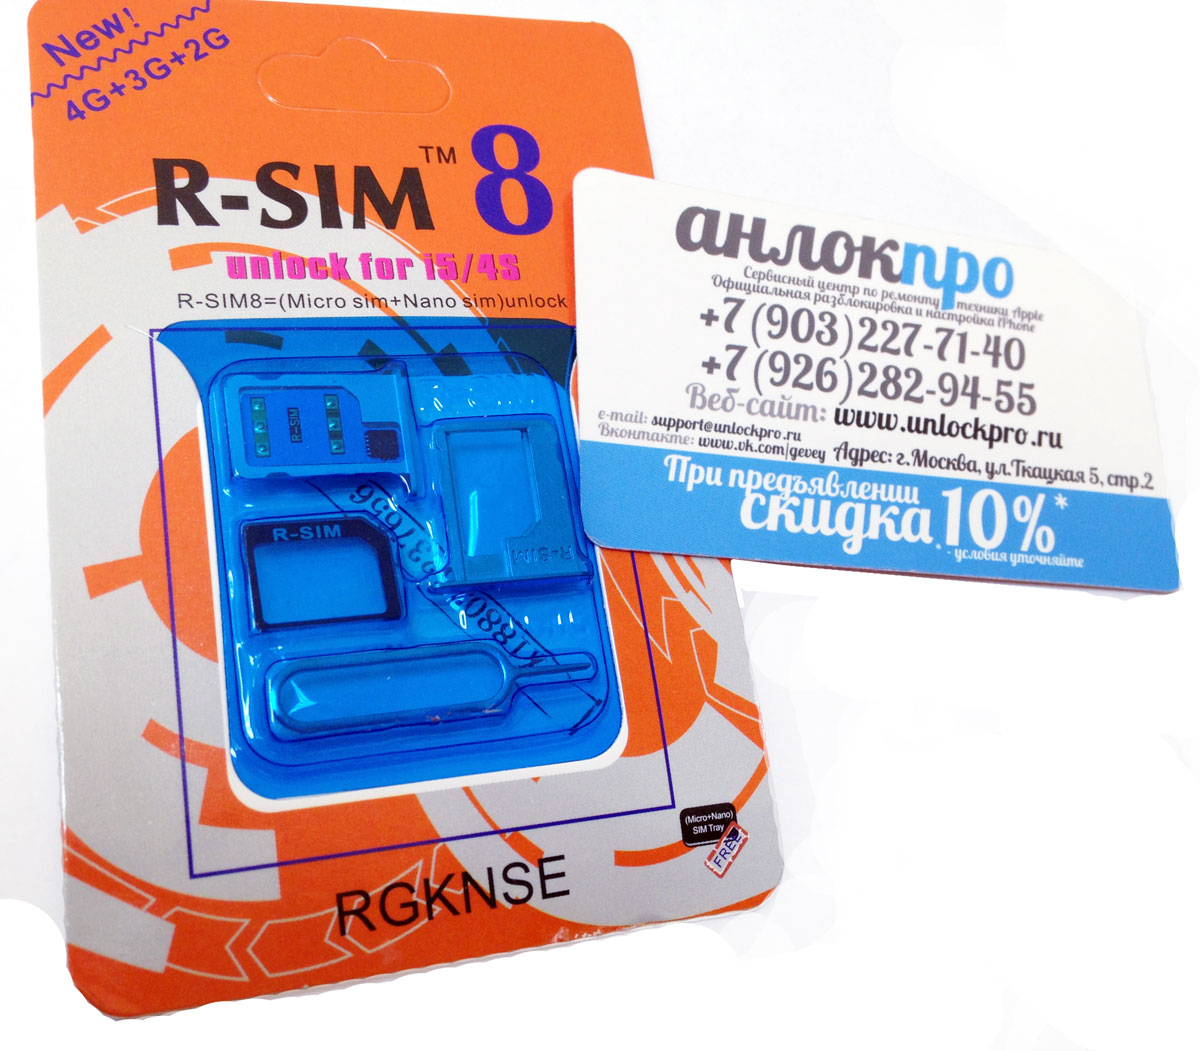 Оригинальная турбо-сим R-sim8 купить в Москве